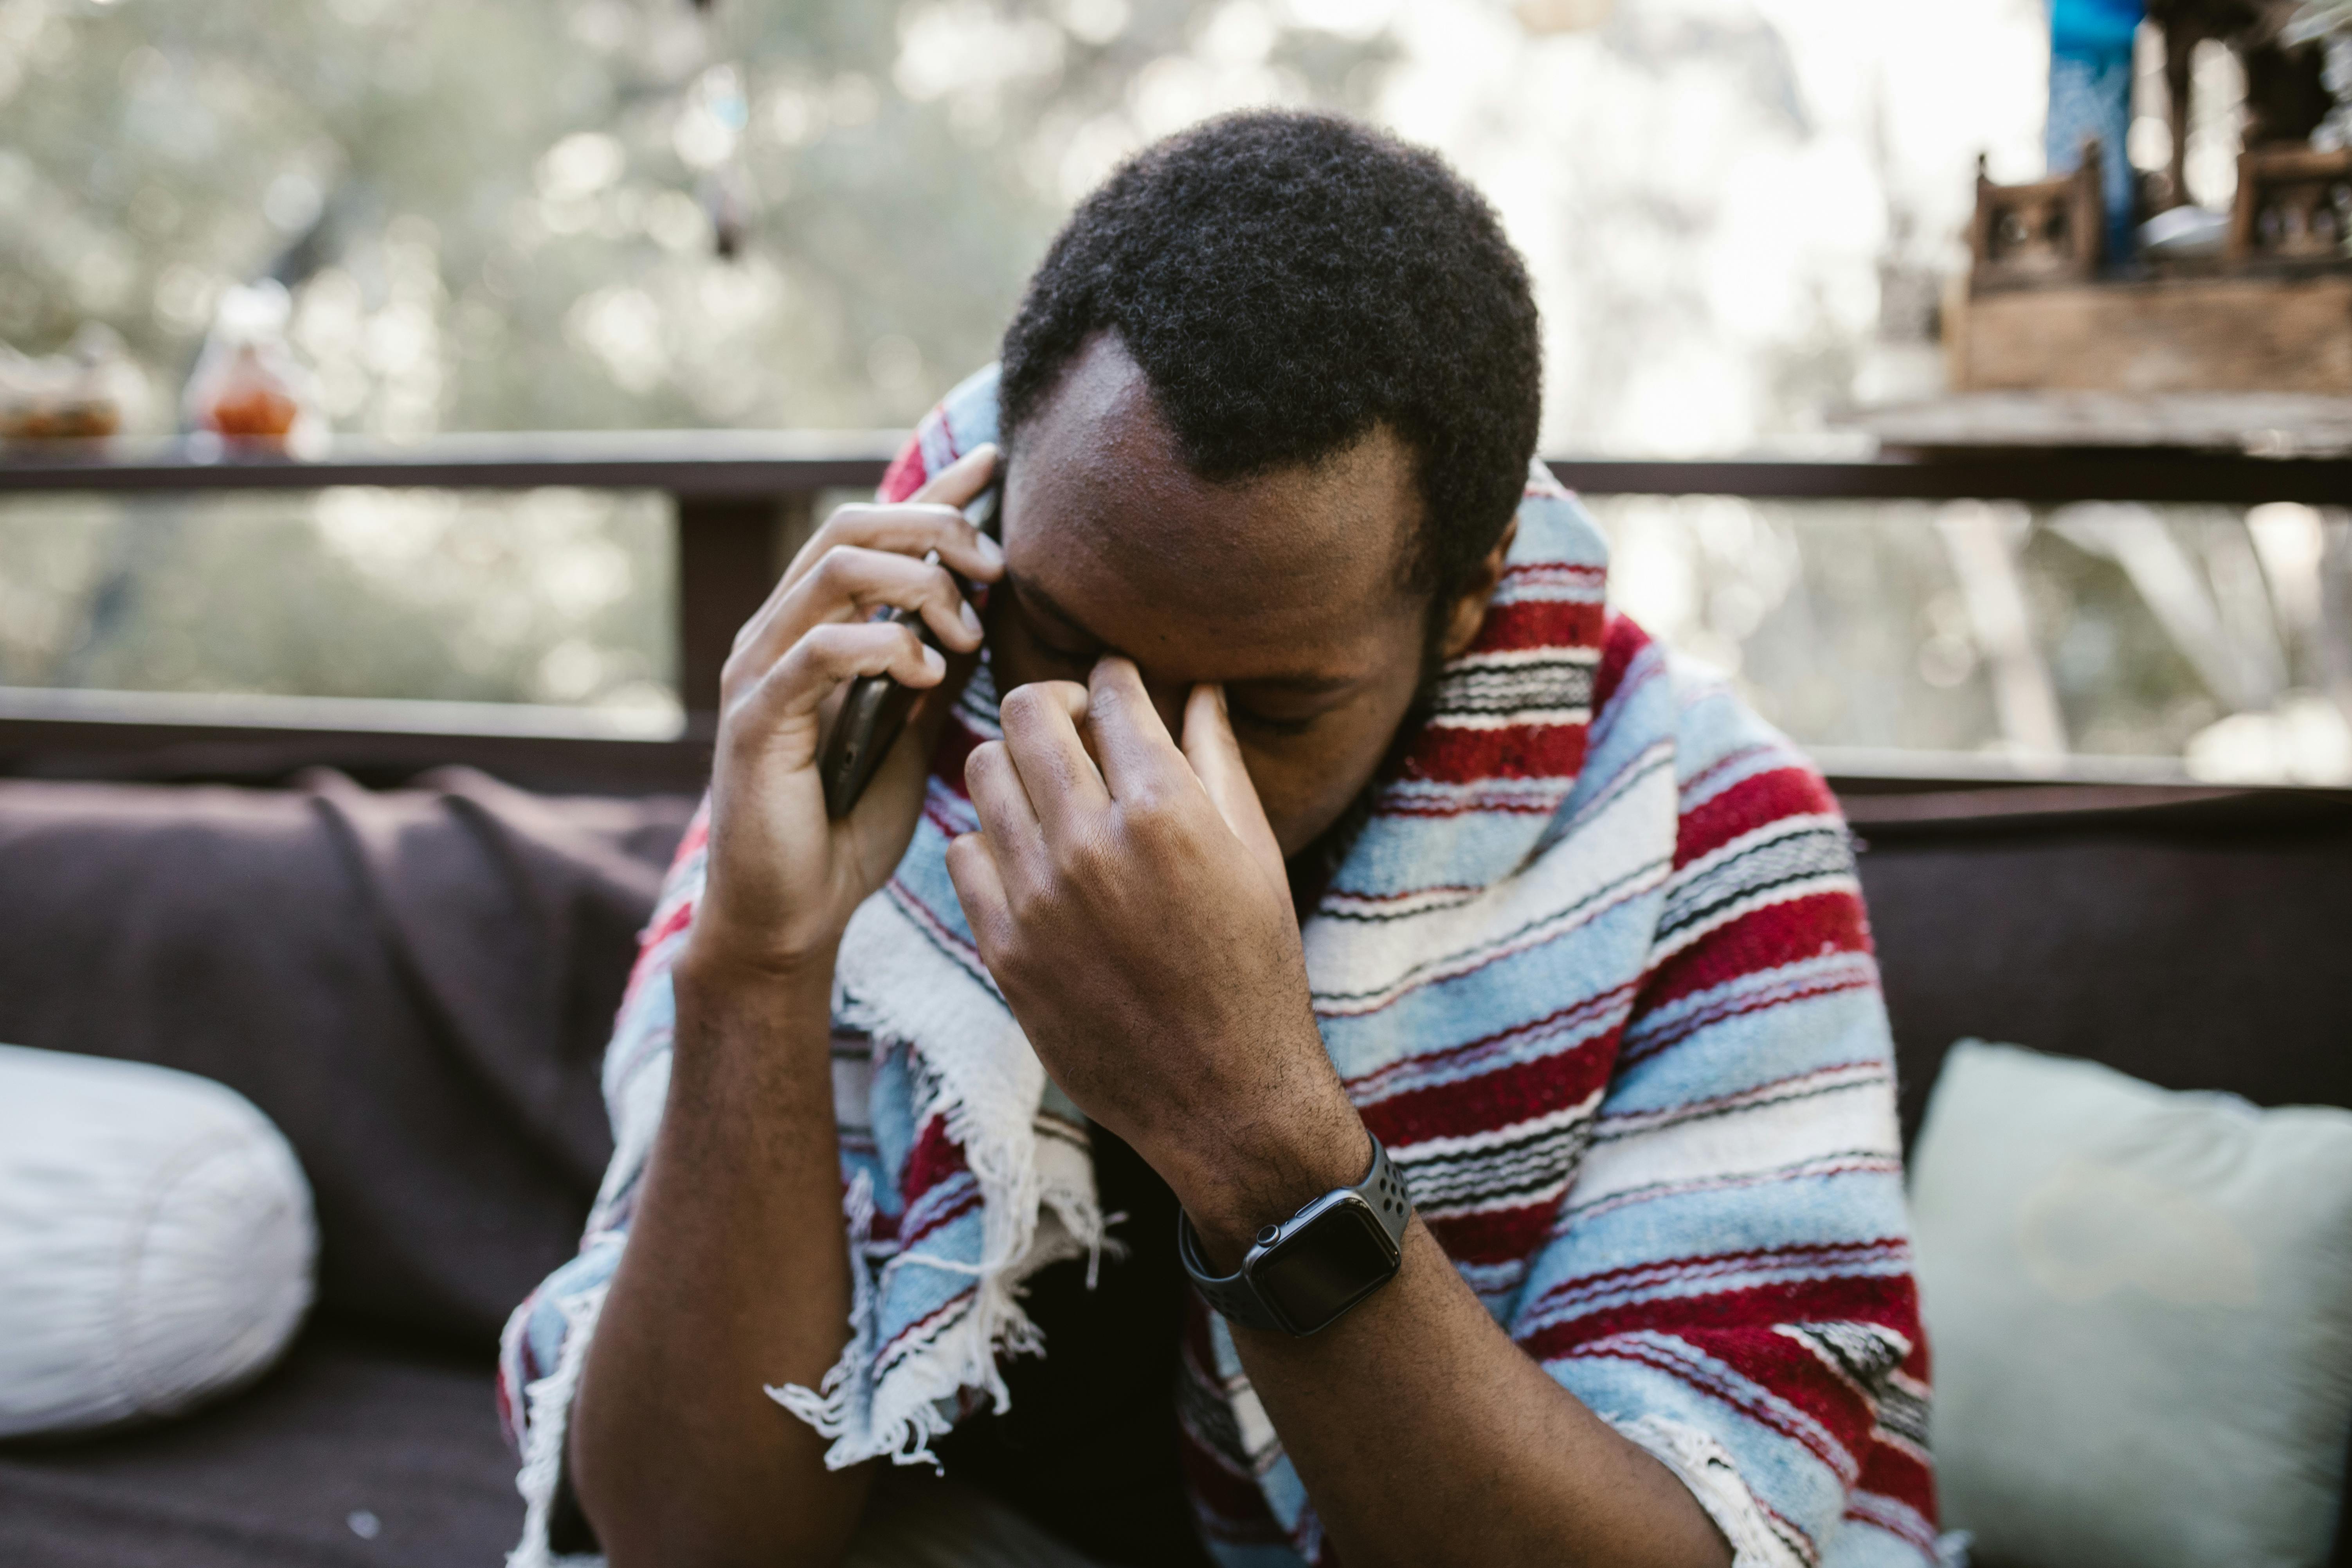 Ein frustrierter Mann mit seiner Hand an der oberen Schläfe, während er telefoniert | Quelle: Pexels